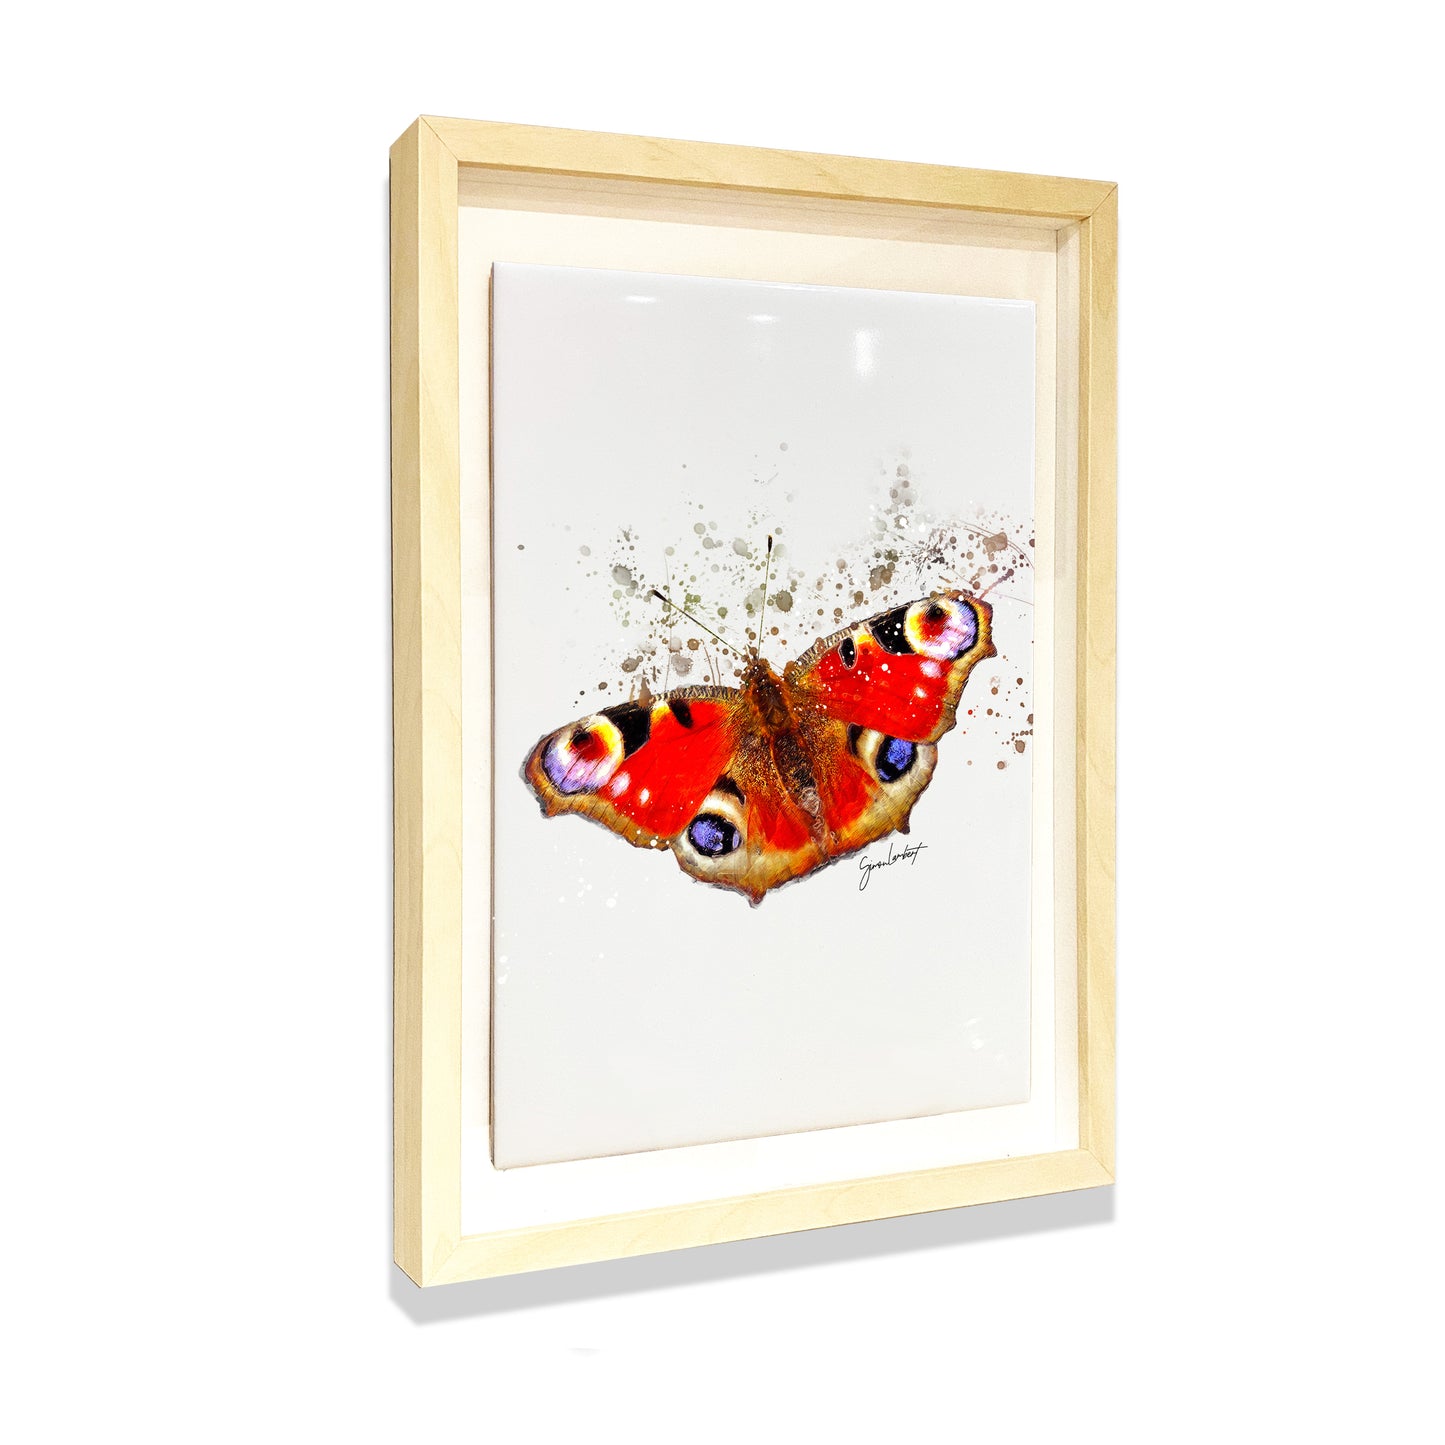 Peacock Butterfly Portrait Brush Splatter Style Artwork - Framed CERAMIC TILE Art